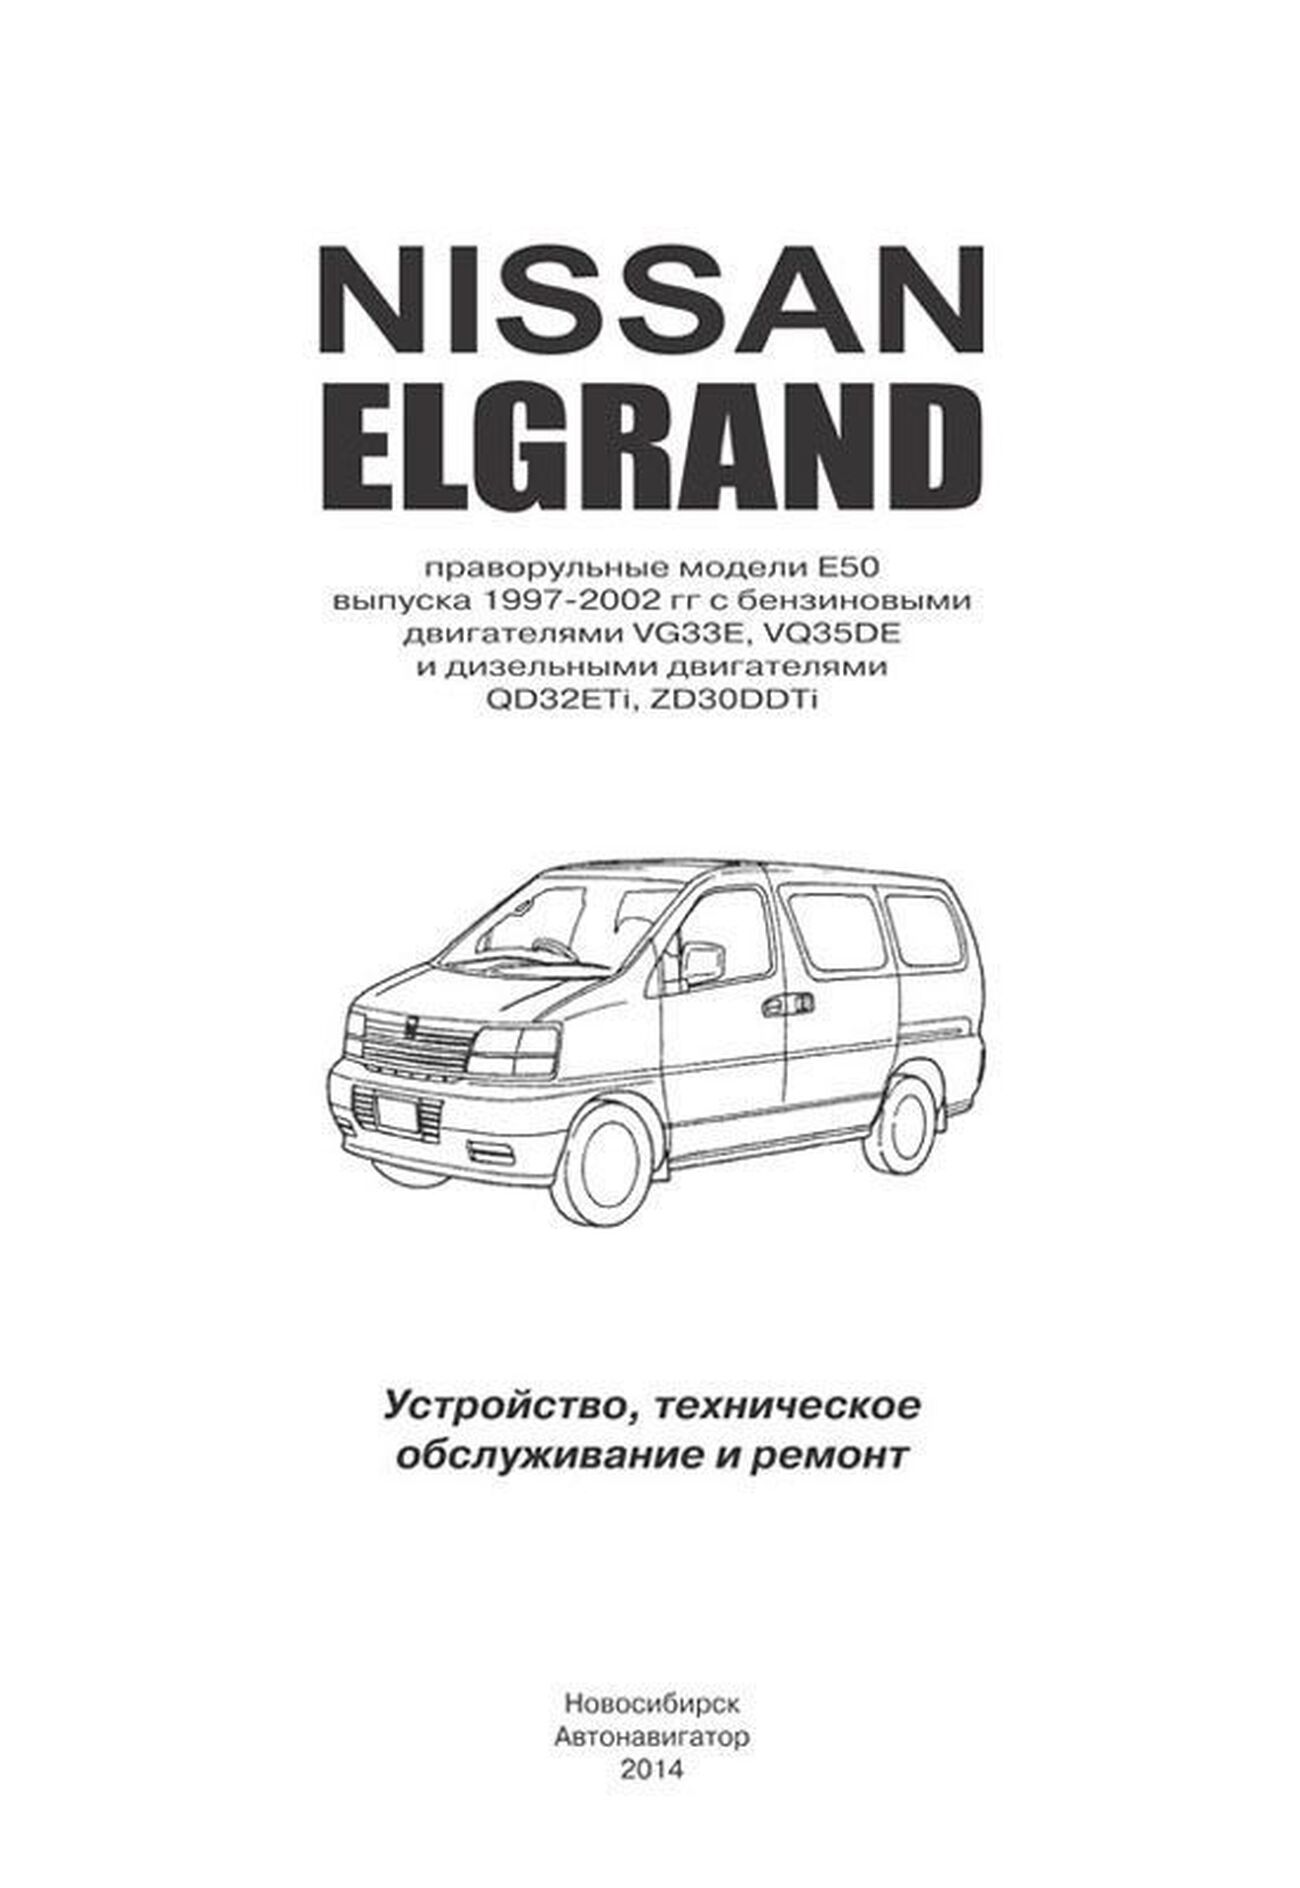 Книга: NISSAN ELGRAND (б , д) 1997-2002 г.в. рем., экспл., то | Автонавигатор